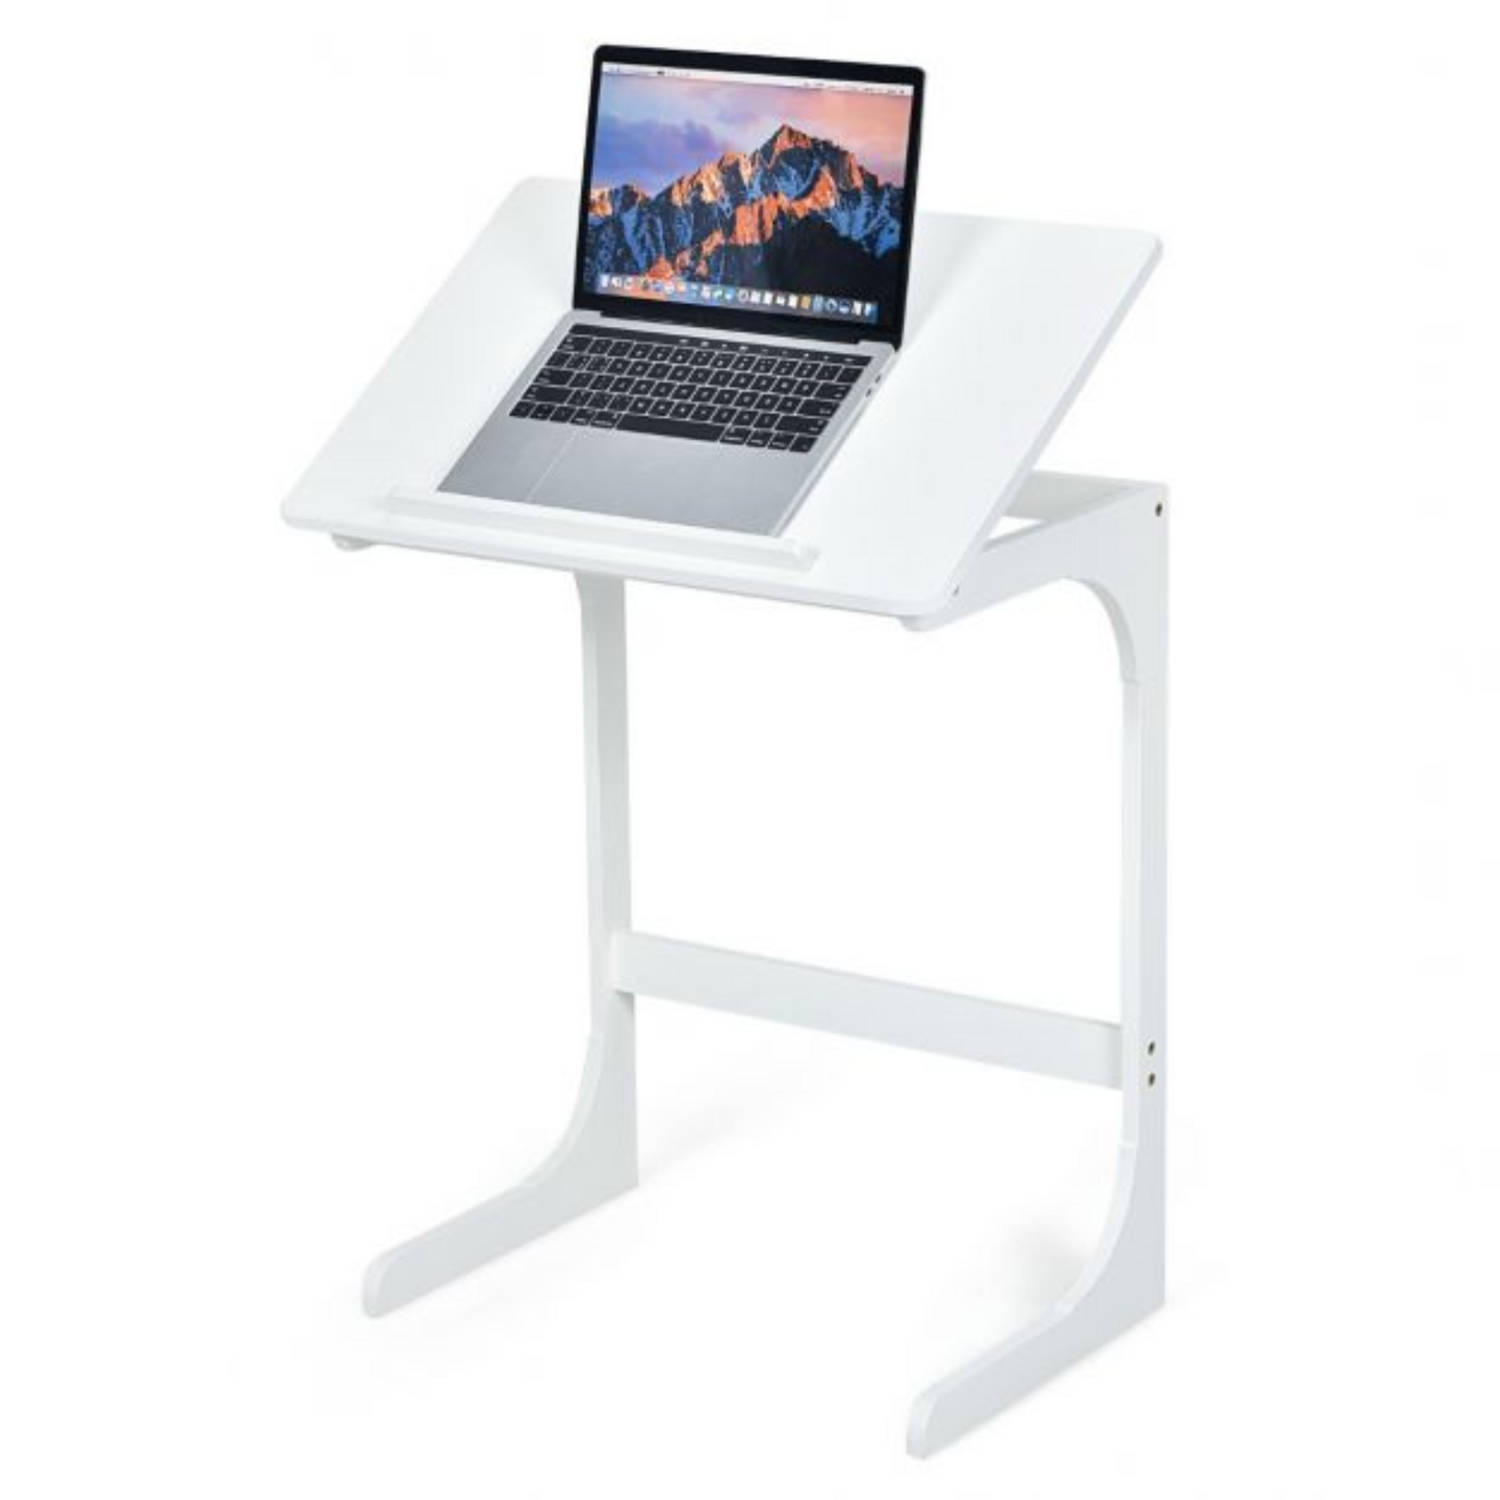 Zenzee Bijzettafel Laptoptafel Laptopstandaard Eettafel Klapbaar Voor Bank Of Bed B60 X H70 X D40 Cm